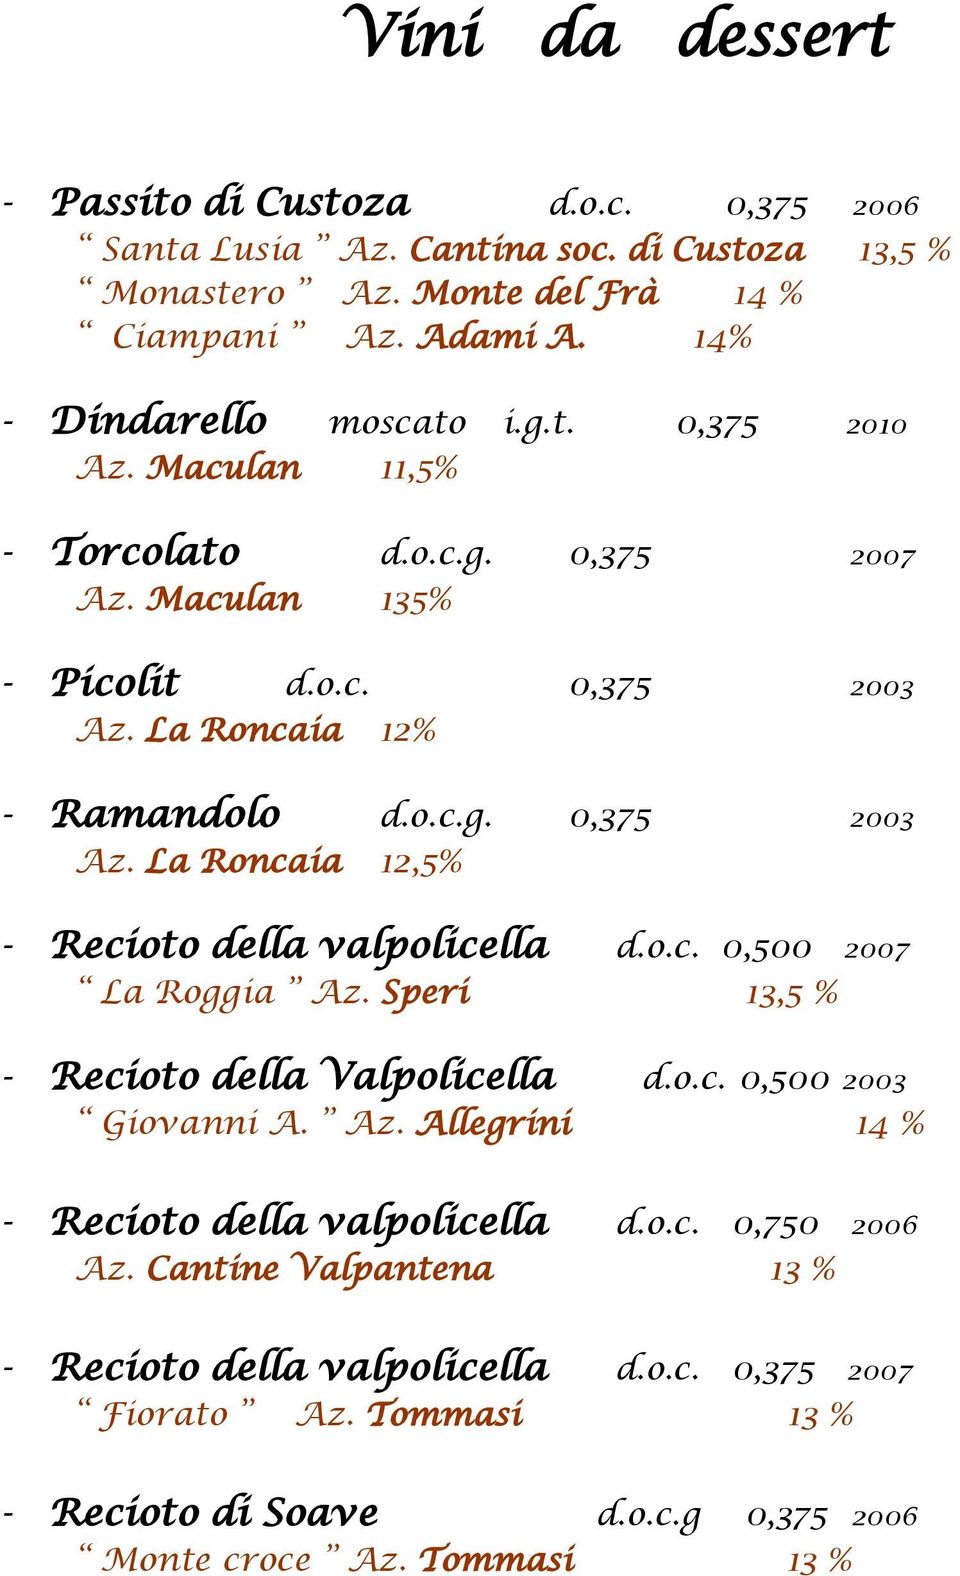 La Roncaia 12% - Ramandolo d.o.c.g. 0,375 2003 Az. La Roncaia 12,5% - Recioto della valpolicella d.o.c. 0,500 2007 La Roggia Az. Speri 13,5 % - Recioto della Valpolicella d.o.c. 0,500 2003 Giovanni A.